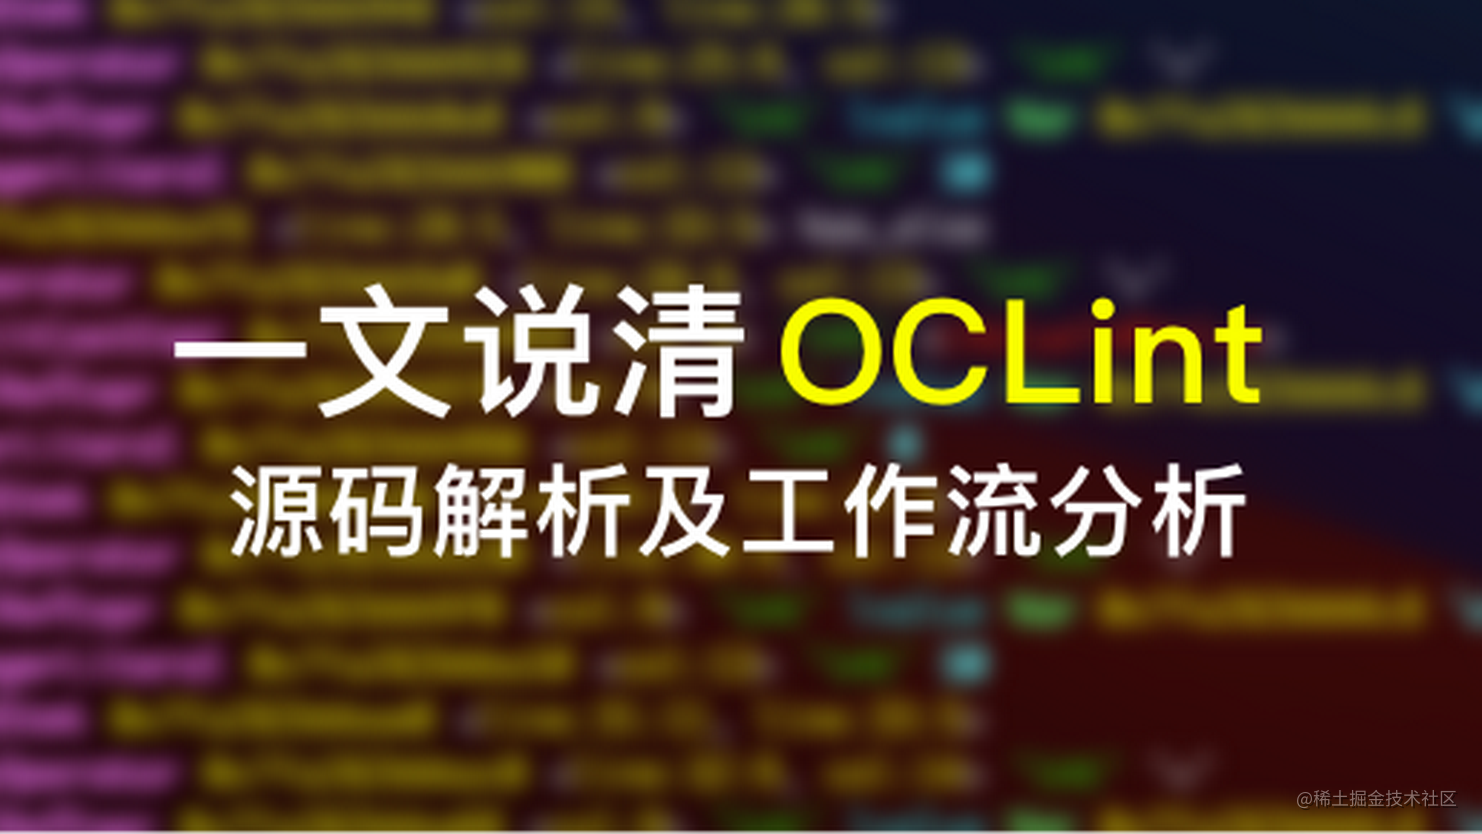 一文说清 OCLint 源码解析及工作流分析